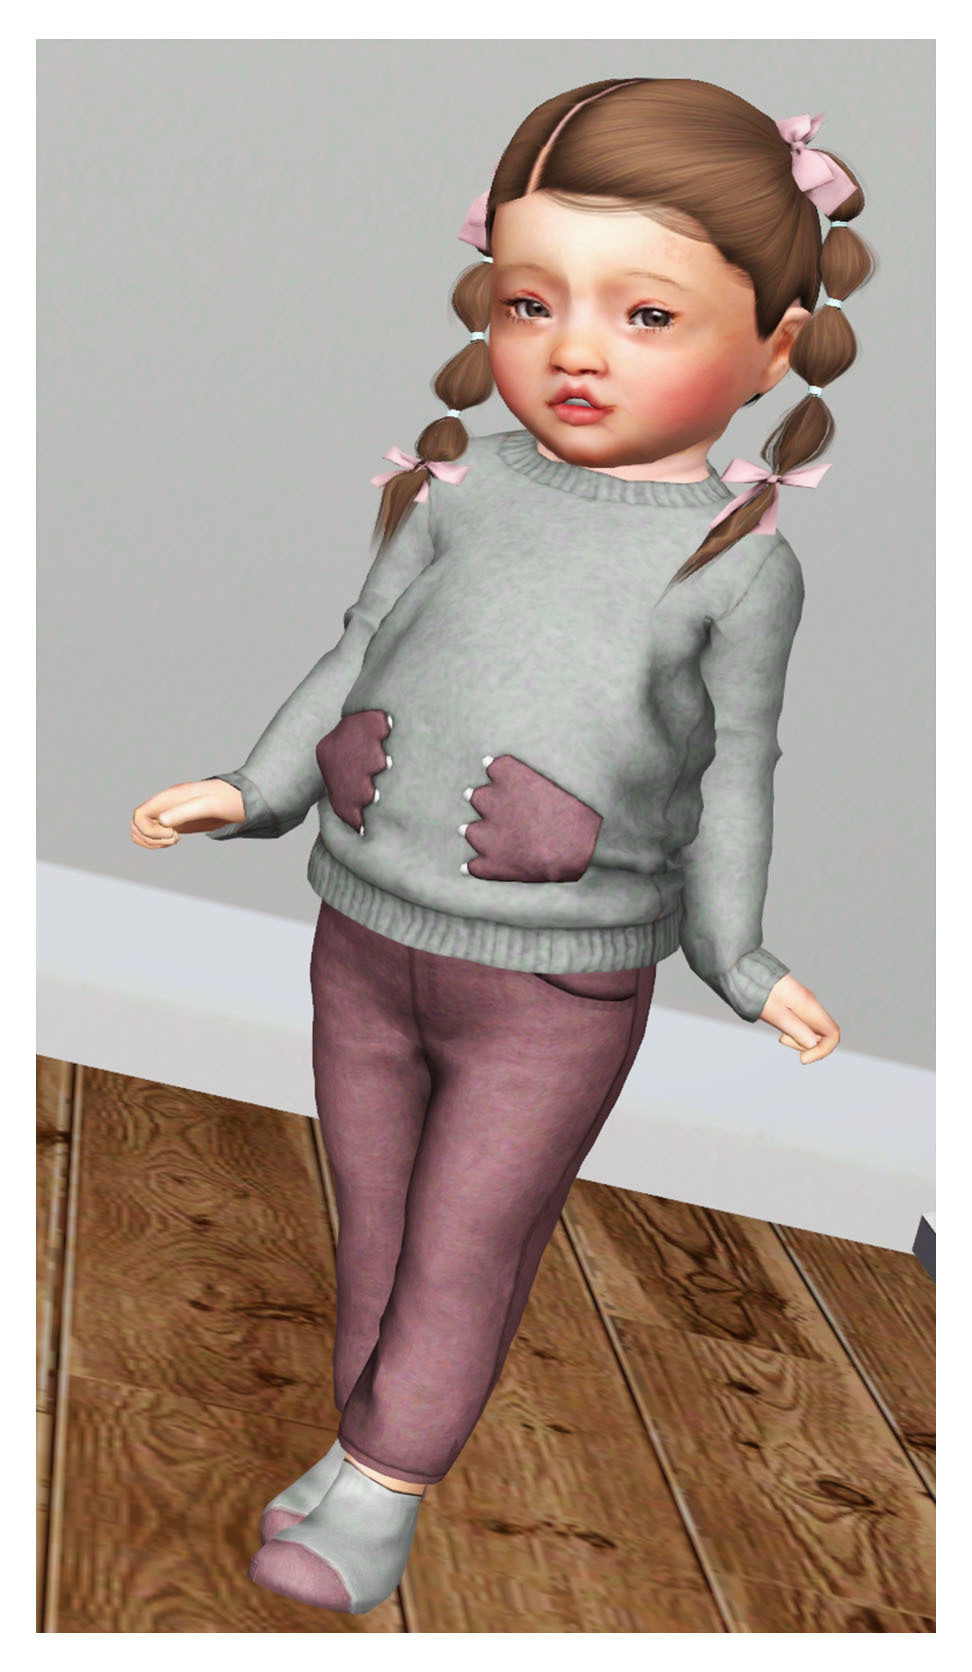 Sims 3 Toddler On Tumblr